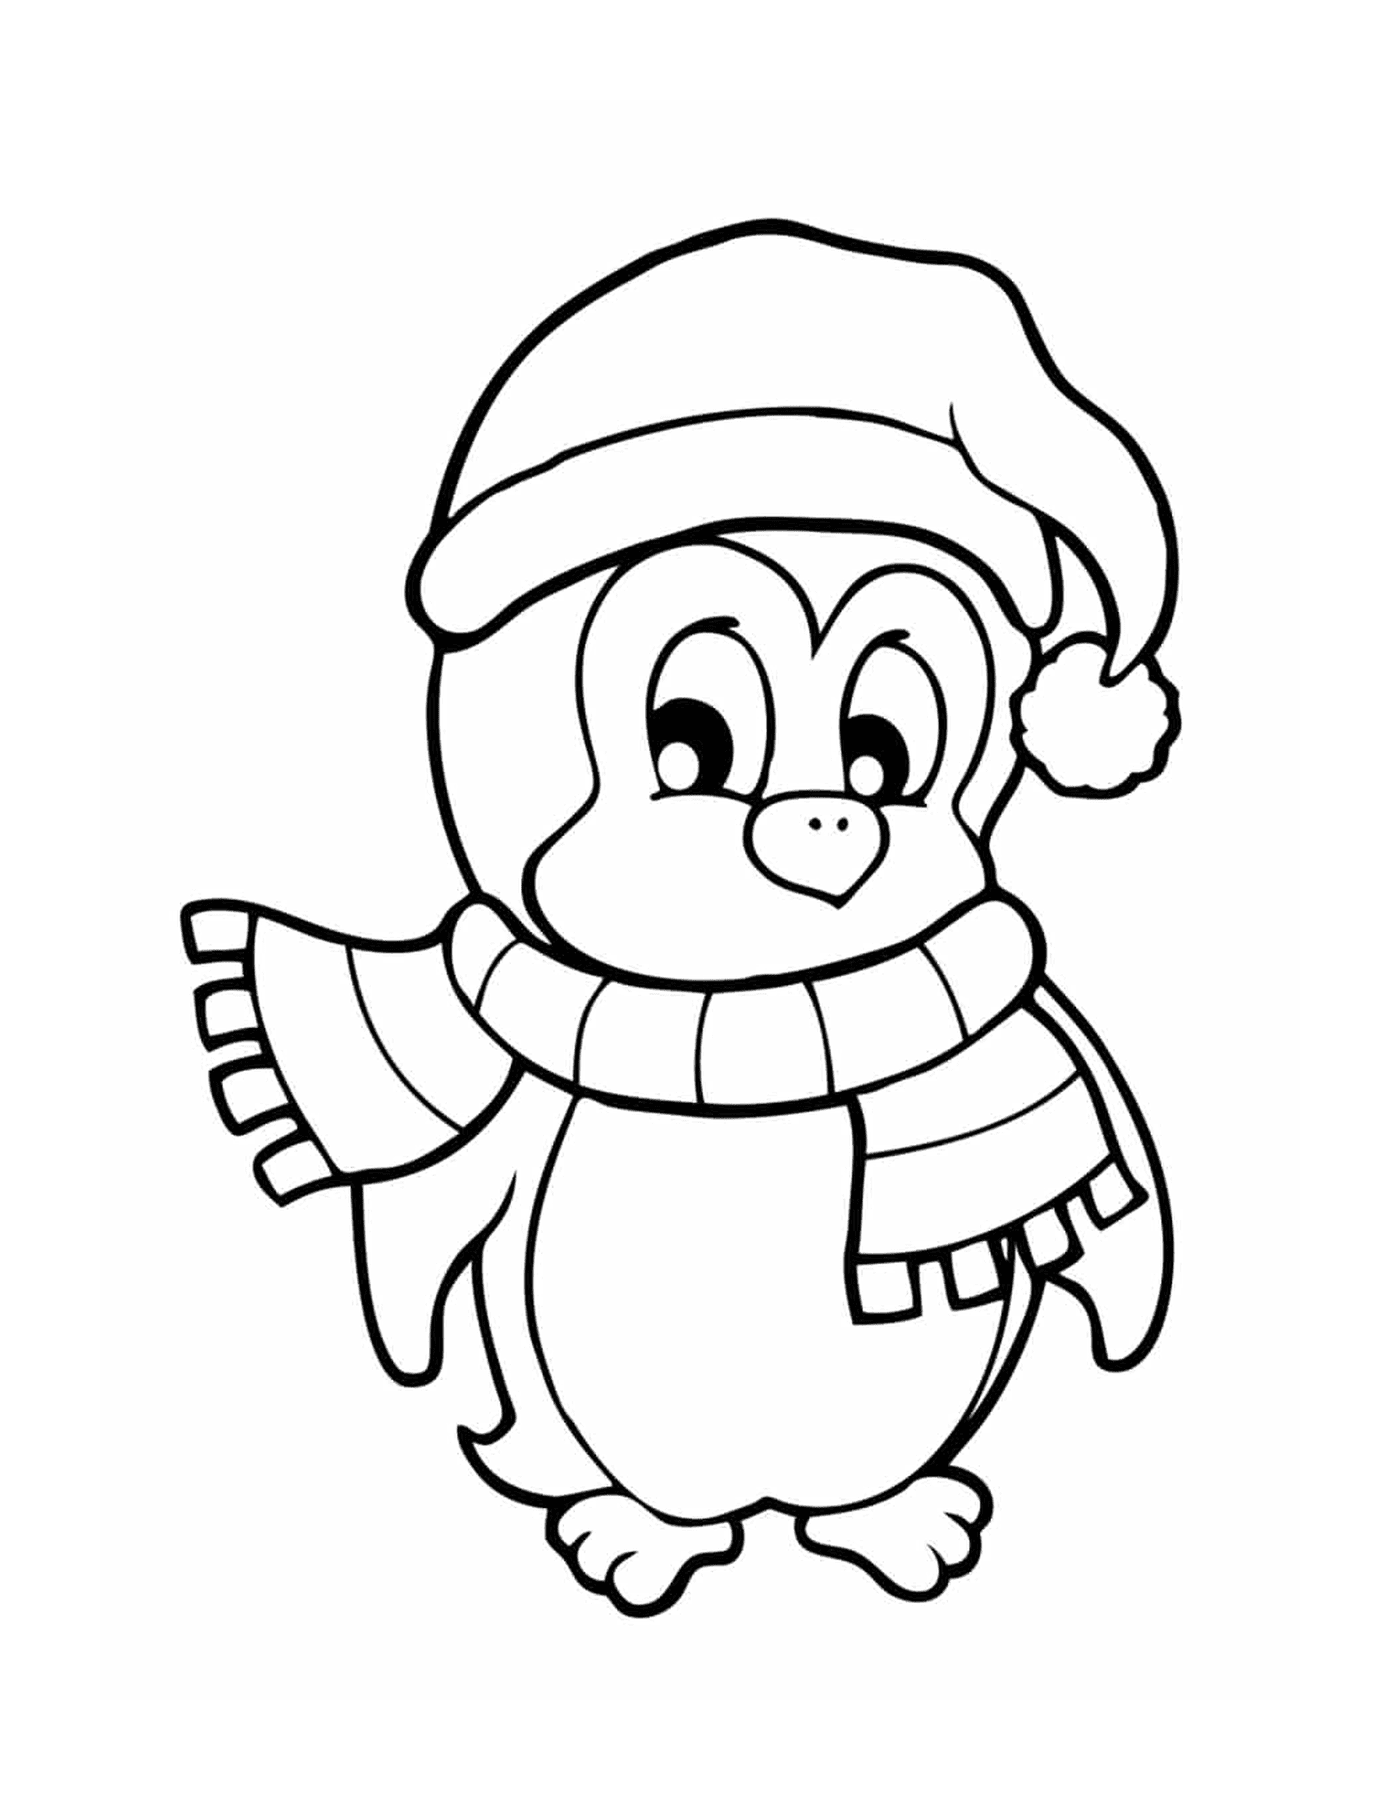  Пингвин с рождественской шляпой 